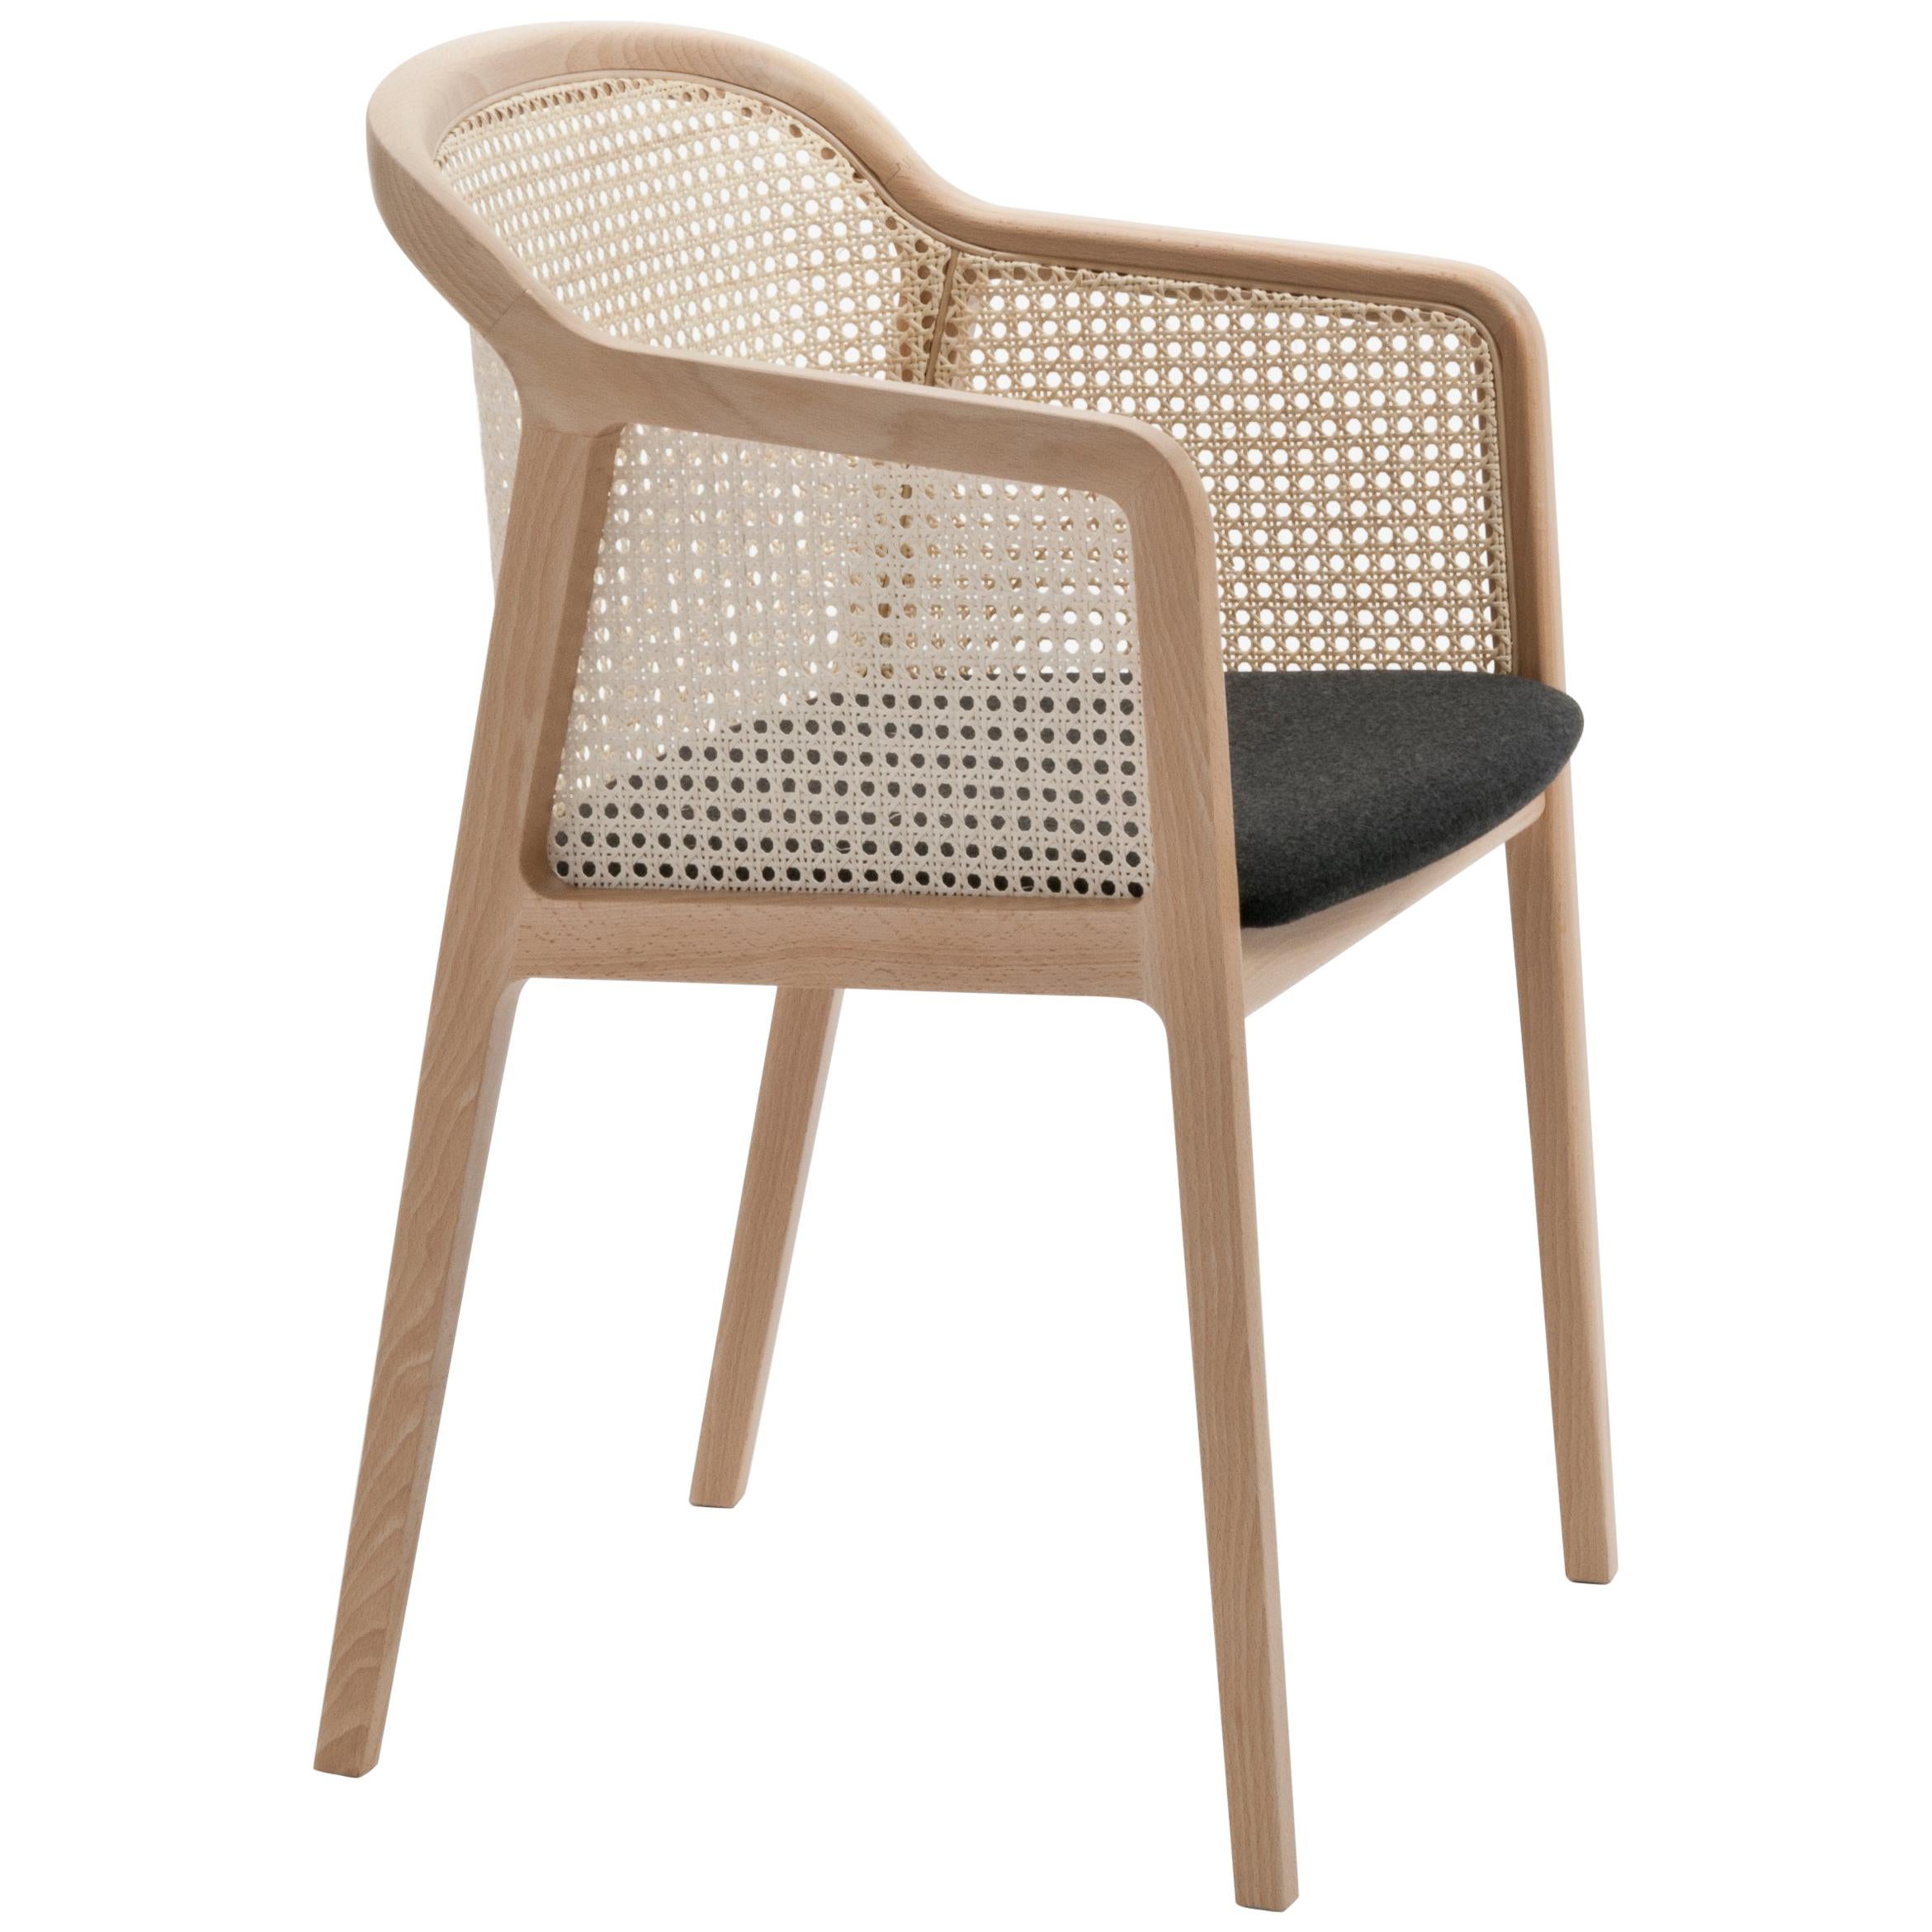 Wiener Sessel, modernes Design aus Holz und Stroh, Sitz mit schwarzem Filzbezug